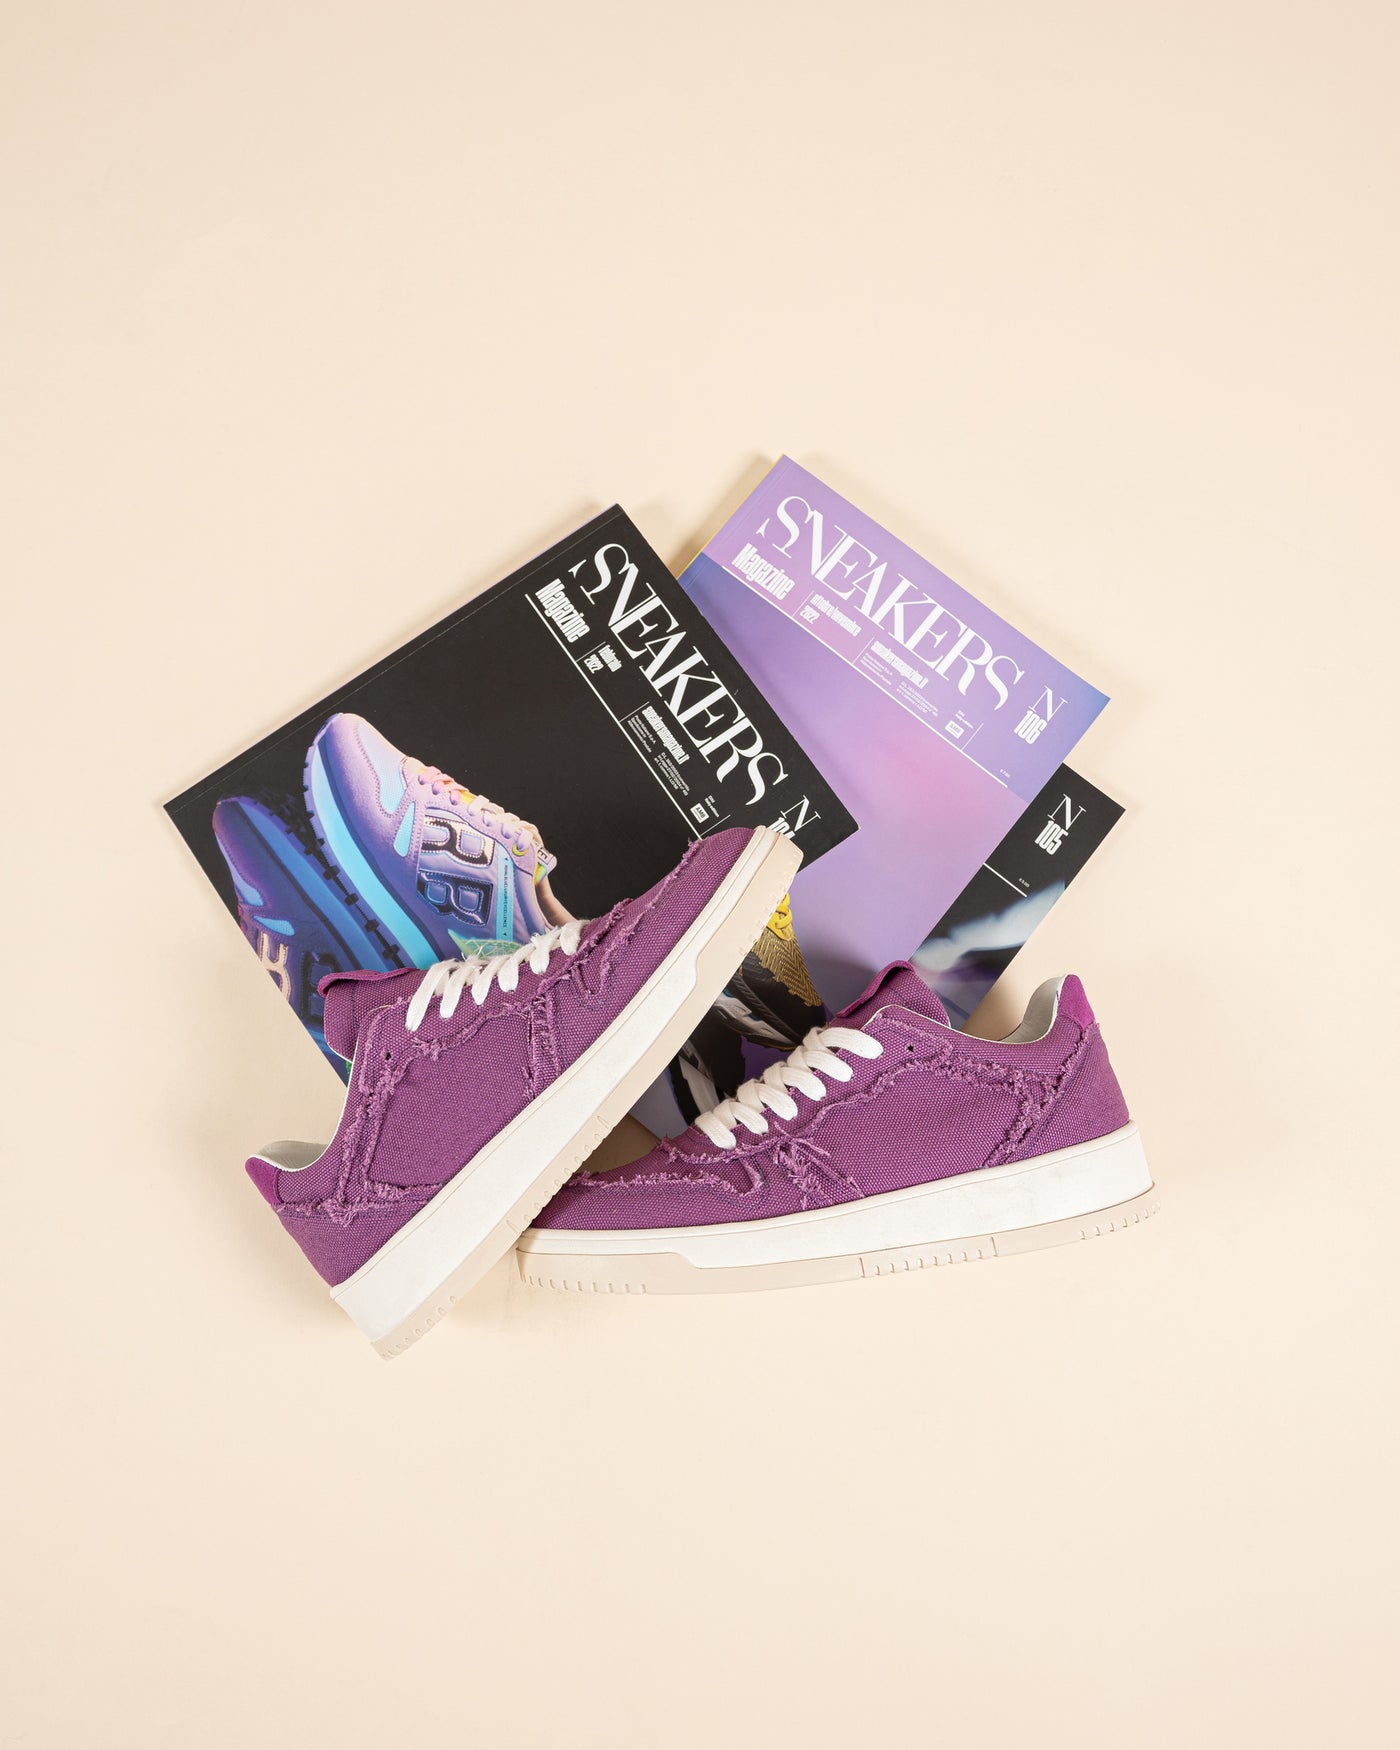 Delta | Sneakers in Canvas Violet